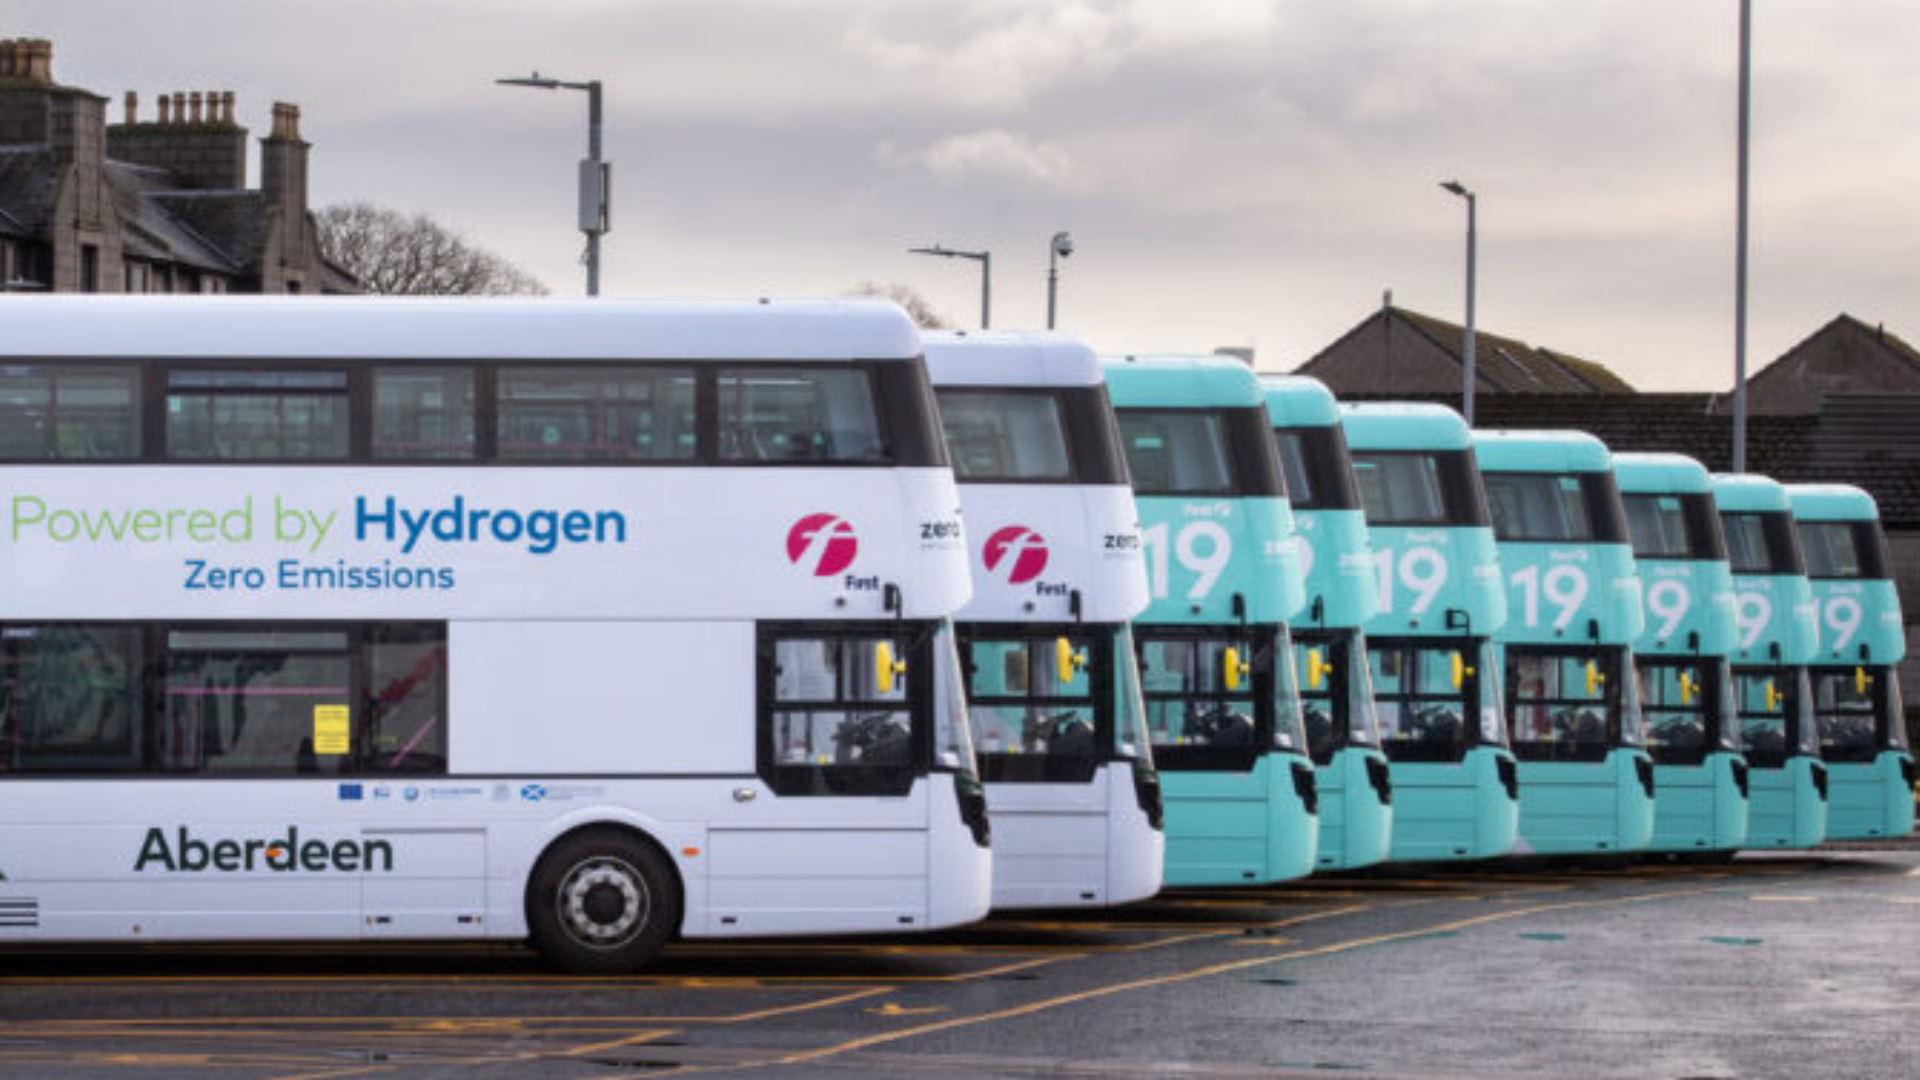 fleet of hydrogen buses powered by Ballard